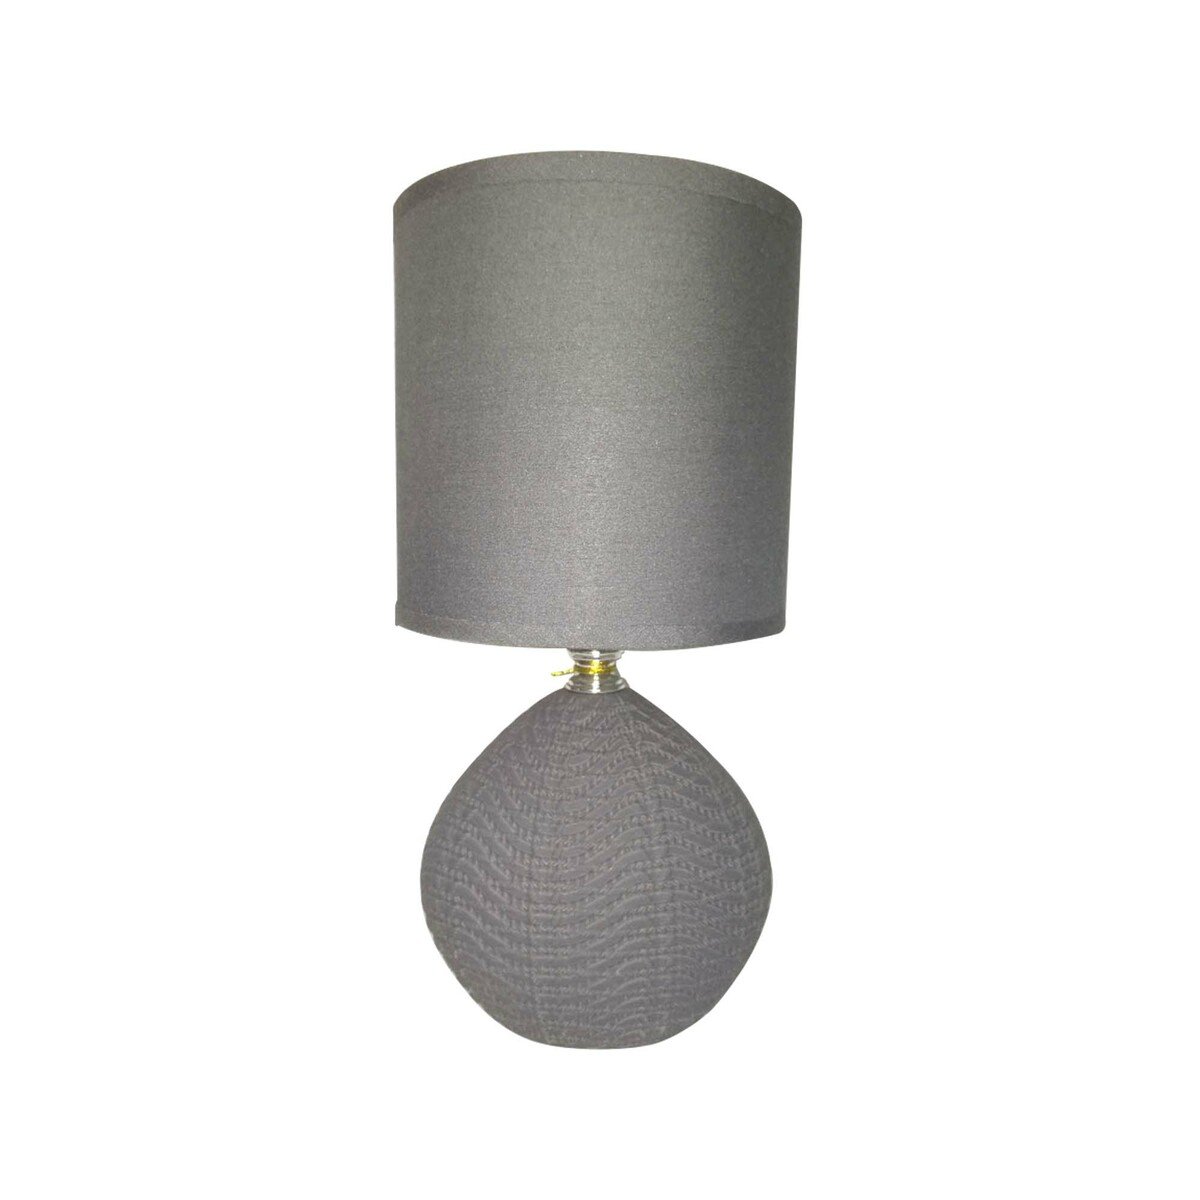 Maple Leaf Ceramic Table Lamp HS8138PRM 13x27cm Assorted